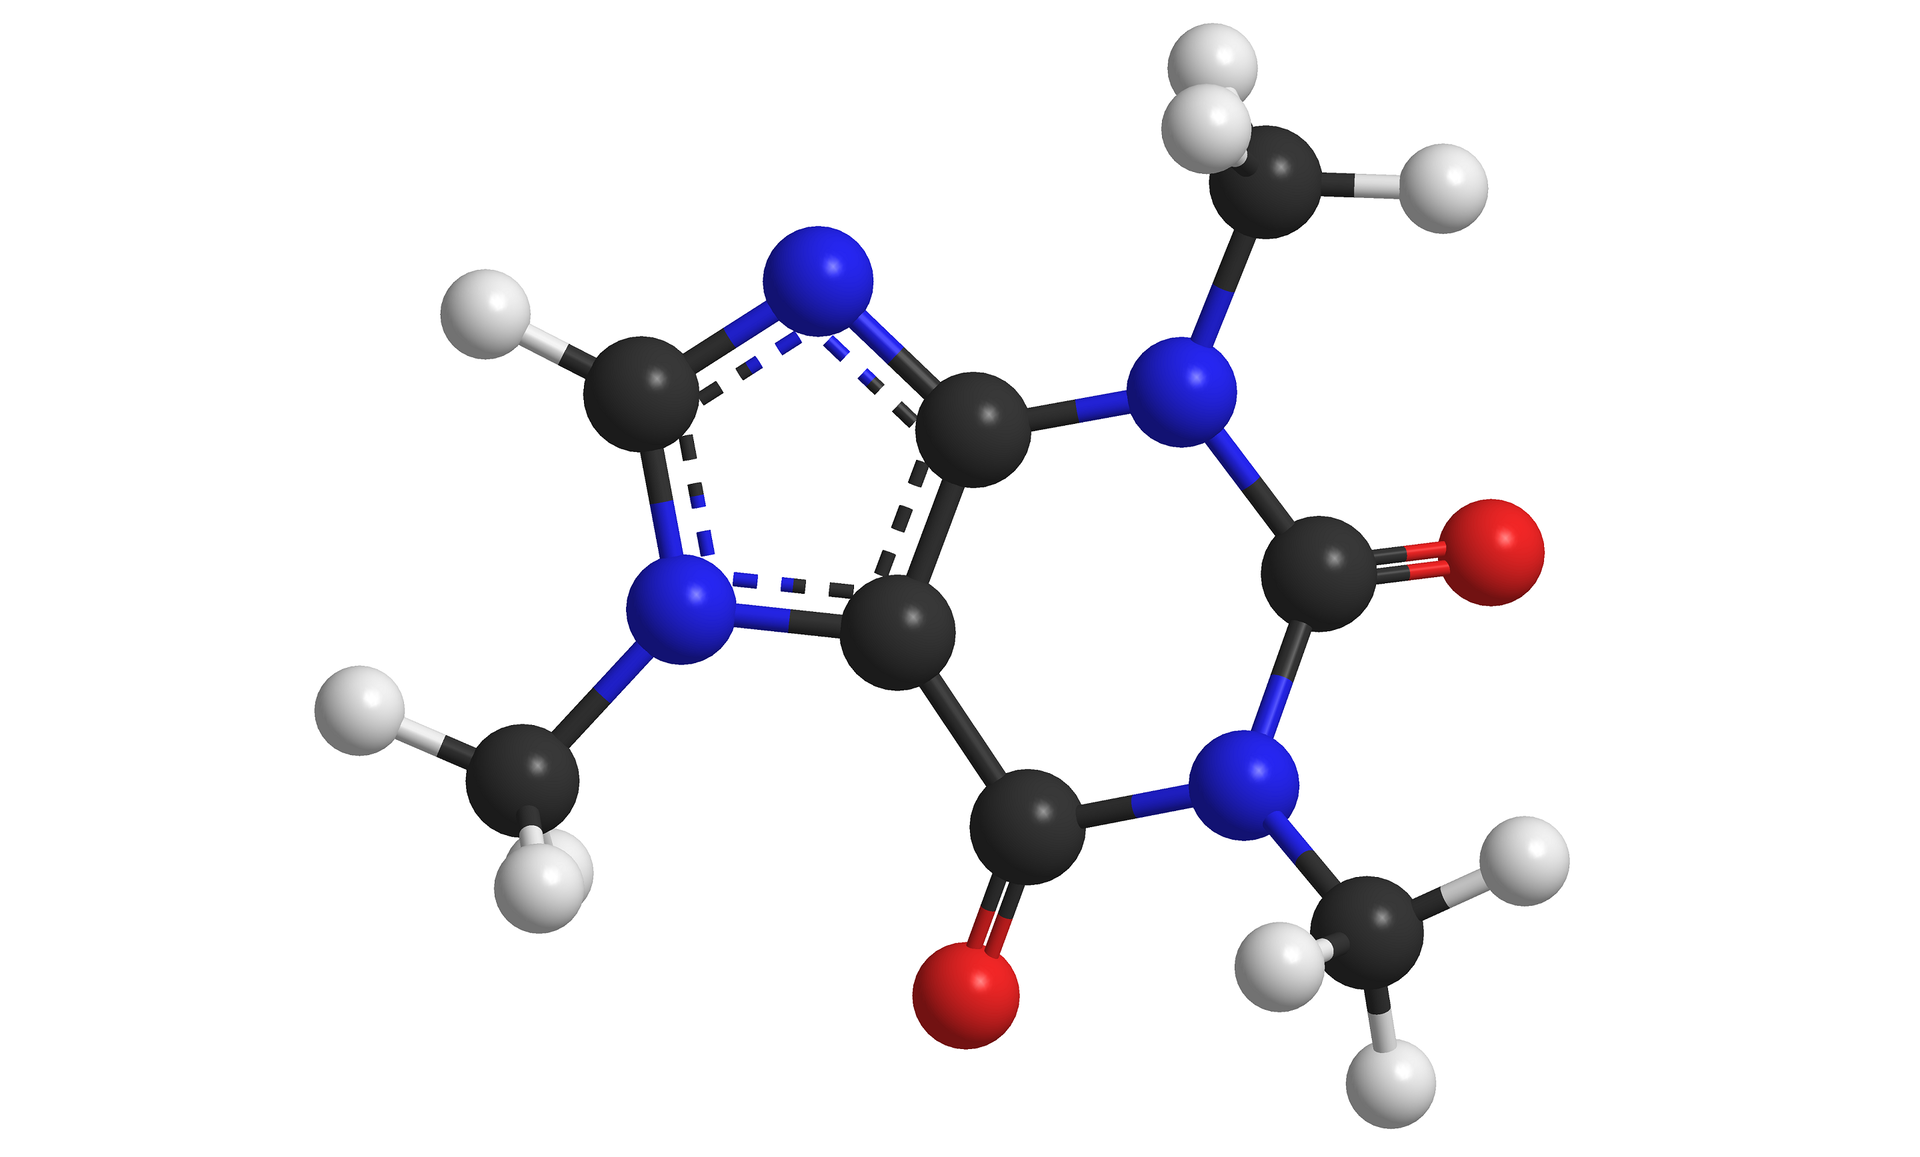 Na grafice przedstawiony został model kulkowy cząsteczki kofeiny. Cząsteczka składa się z 10 atomów wodoru, 8 atomów węgla, 4 atomów azotu i 2 atomów tlenu. Kolorem czarnym oznaczono atomy węgla, kolorem niebieskim oznaczono atomy azotu, kolorem białym oznaczono atomy wodoru, kolorem czerwonym oznaczono atomy tlenu.  Cząsteczka kofeiny zbudowana jest z pierścienia purynowego - sześcioczłonowego pierścienia, który składa się kolejno z: atomu azotu (do którego przyłączona jest też grupa metylowa), atomu węgla (do którego przyłączony jest atom tlenu), atomu azotu (do którego jest przyłączona grupa metylowa), atomu węgla (do którego przyłączony jest atom tlenu i dwóch atomów węgla, które jednocześnie współtworzą pierścień pięcioczłonowy z: atomem azotu tworzącym trzy wiązania: jedno z wcześniej wspomnianym atomem węgla, jedno z grupą metylową i jedno z atomem węgla, który połączony jest też z atomem wodoru i atomem azotu. Atom azotu tworzy drugie wiązanie z drugim wspólnym dla pierścienia pięcio- i sześcioczłonowego atomem węgla.